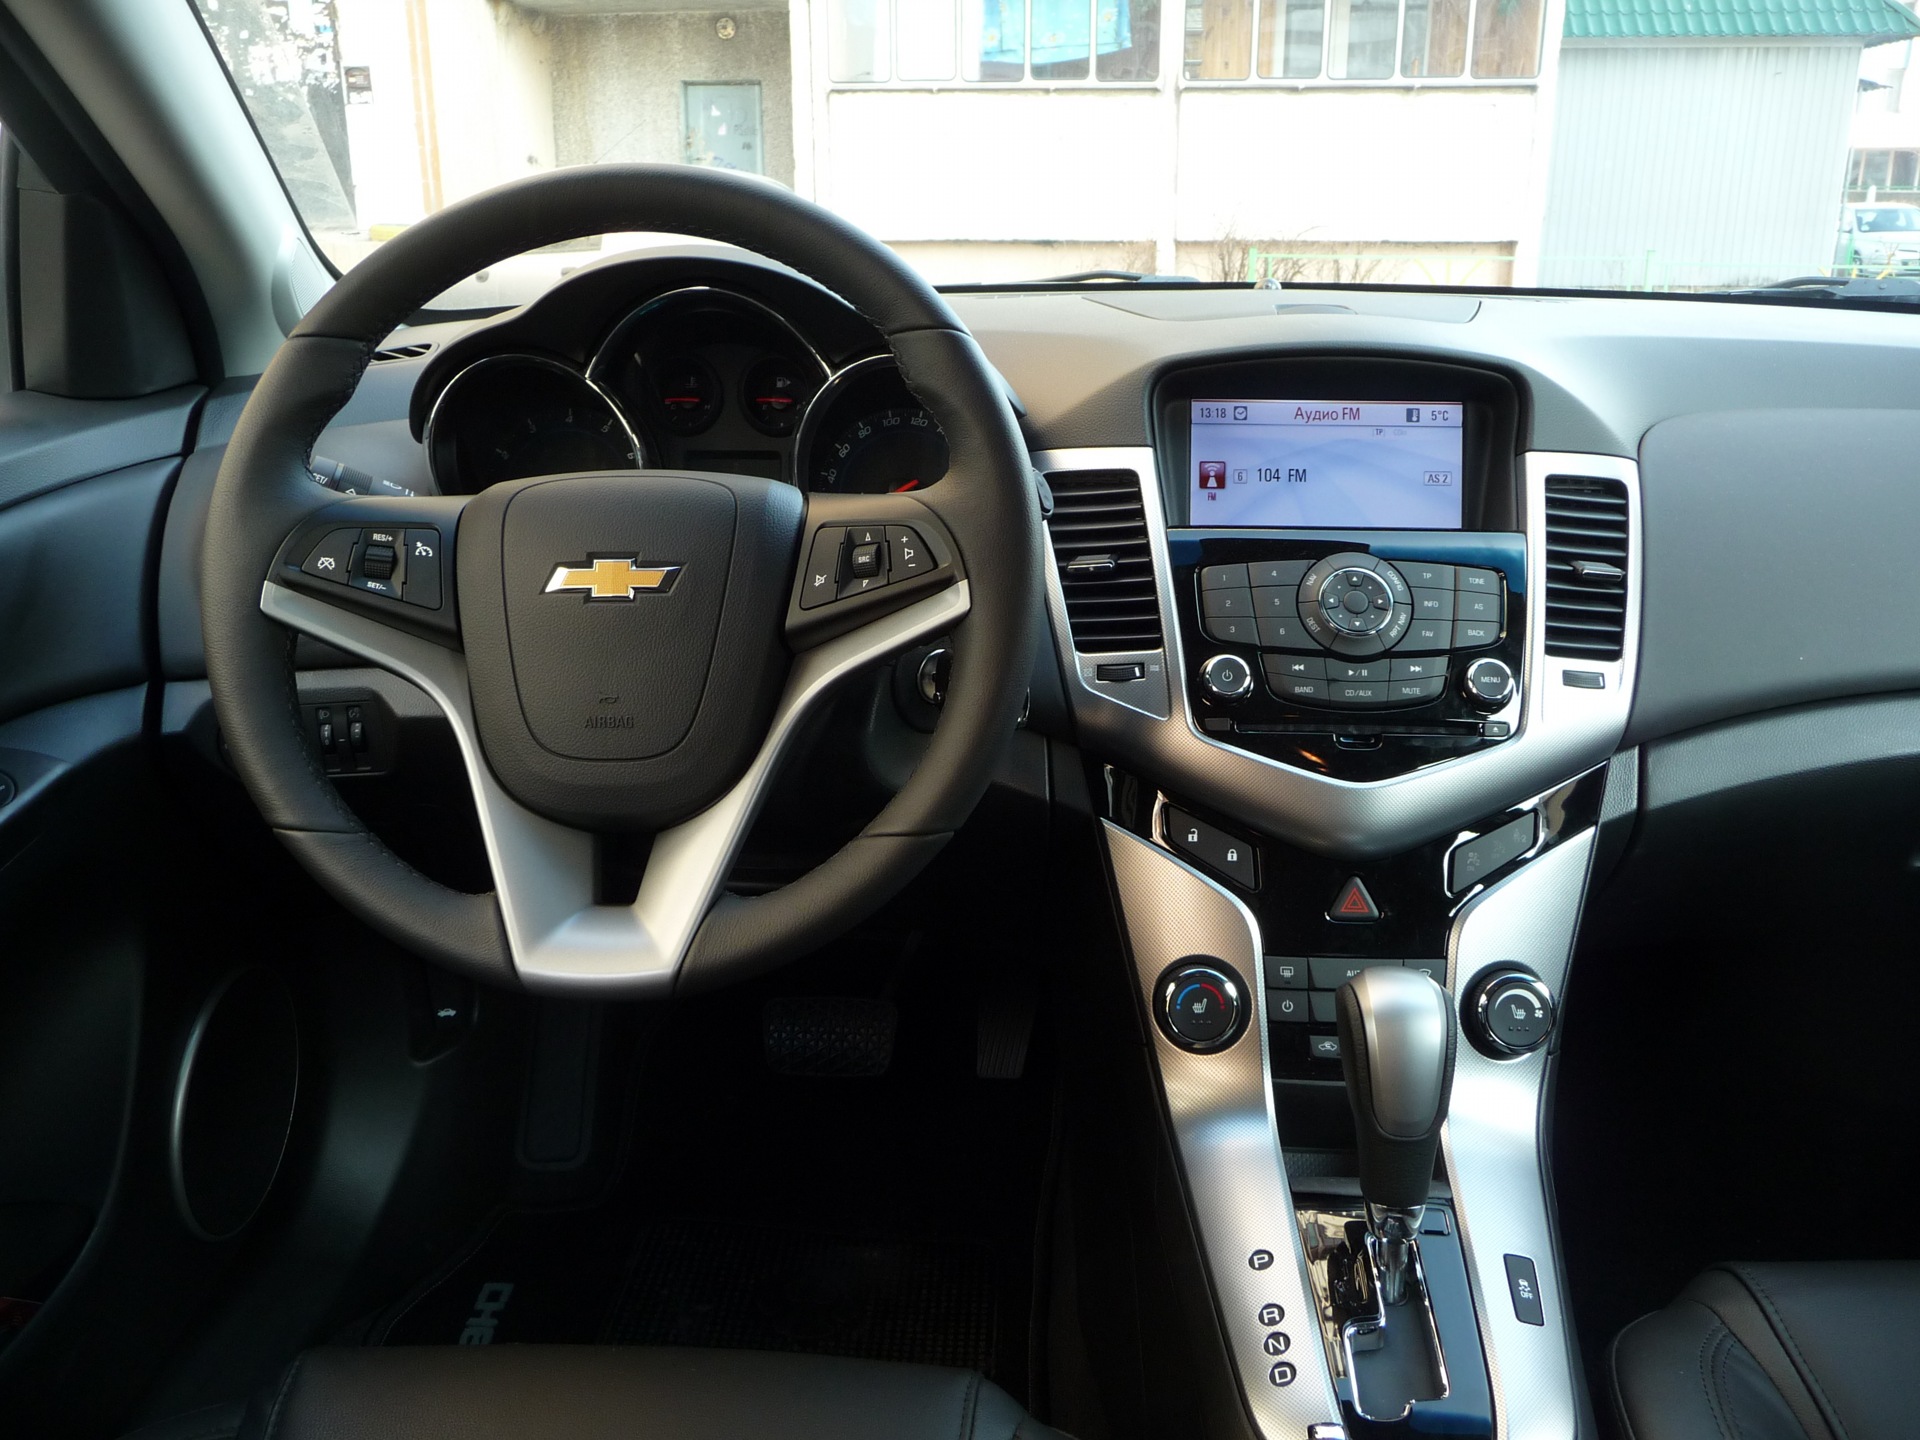 Chevrolet Cruze 2012 хэтчбек салон